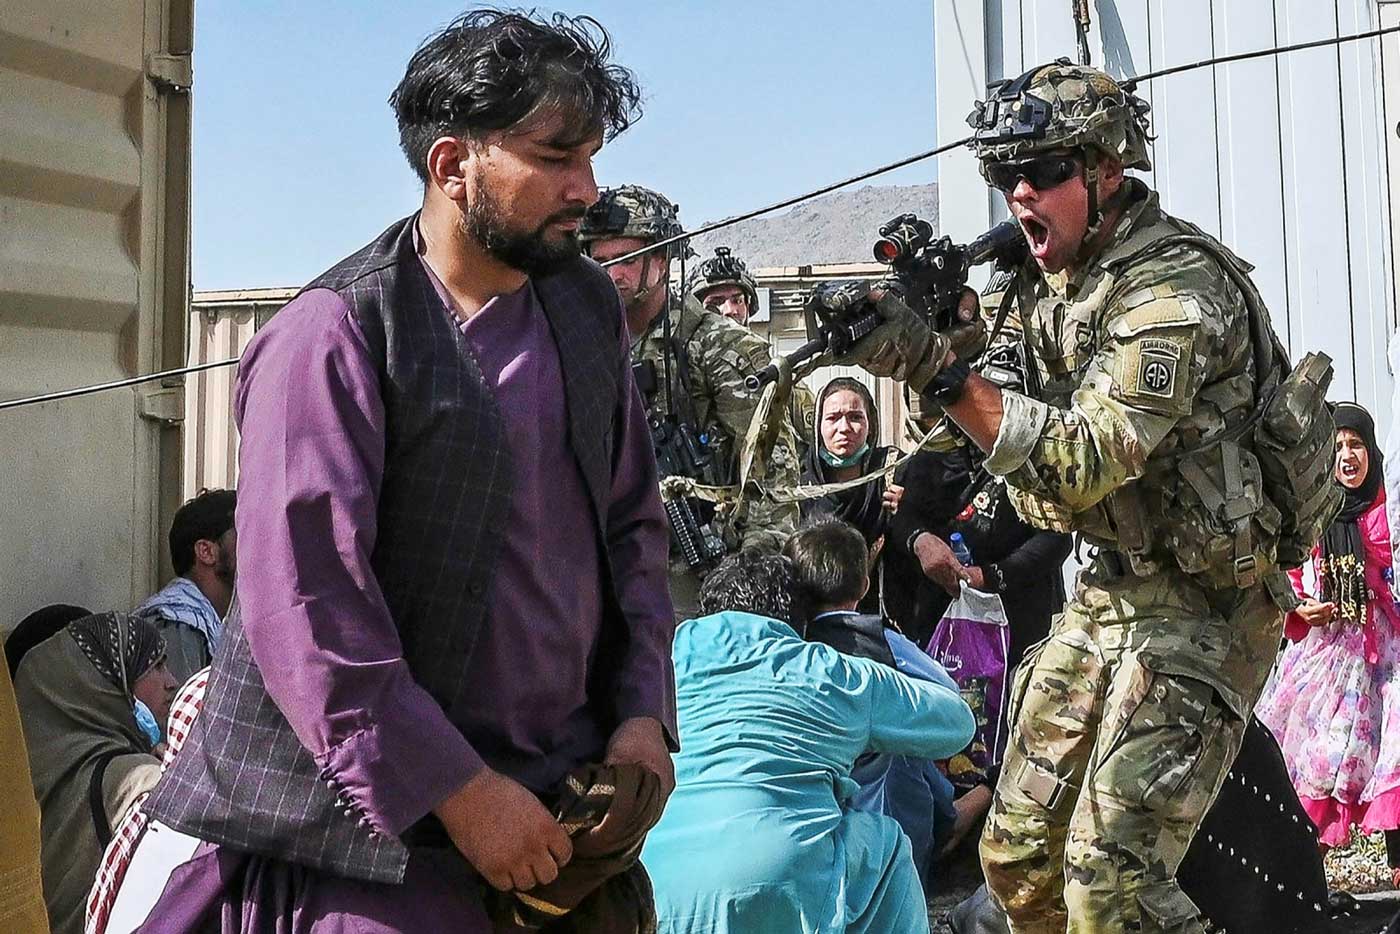 Американский солдат нацеливает оружие на афганского пассажира в аэропорту Кабула в понедельник 16 августа 2021 года, когда тысячи людей осаждали аэропорт, чтобы покинуть страну.